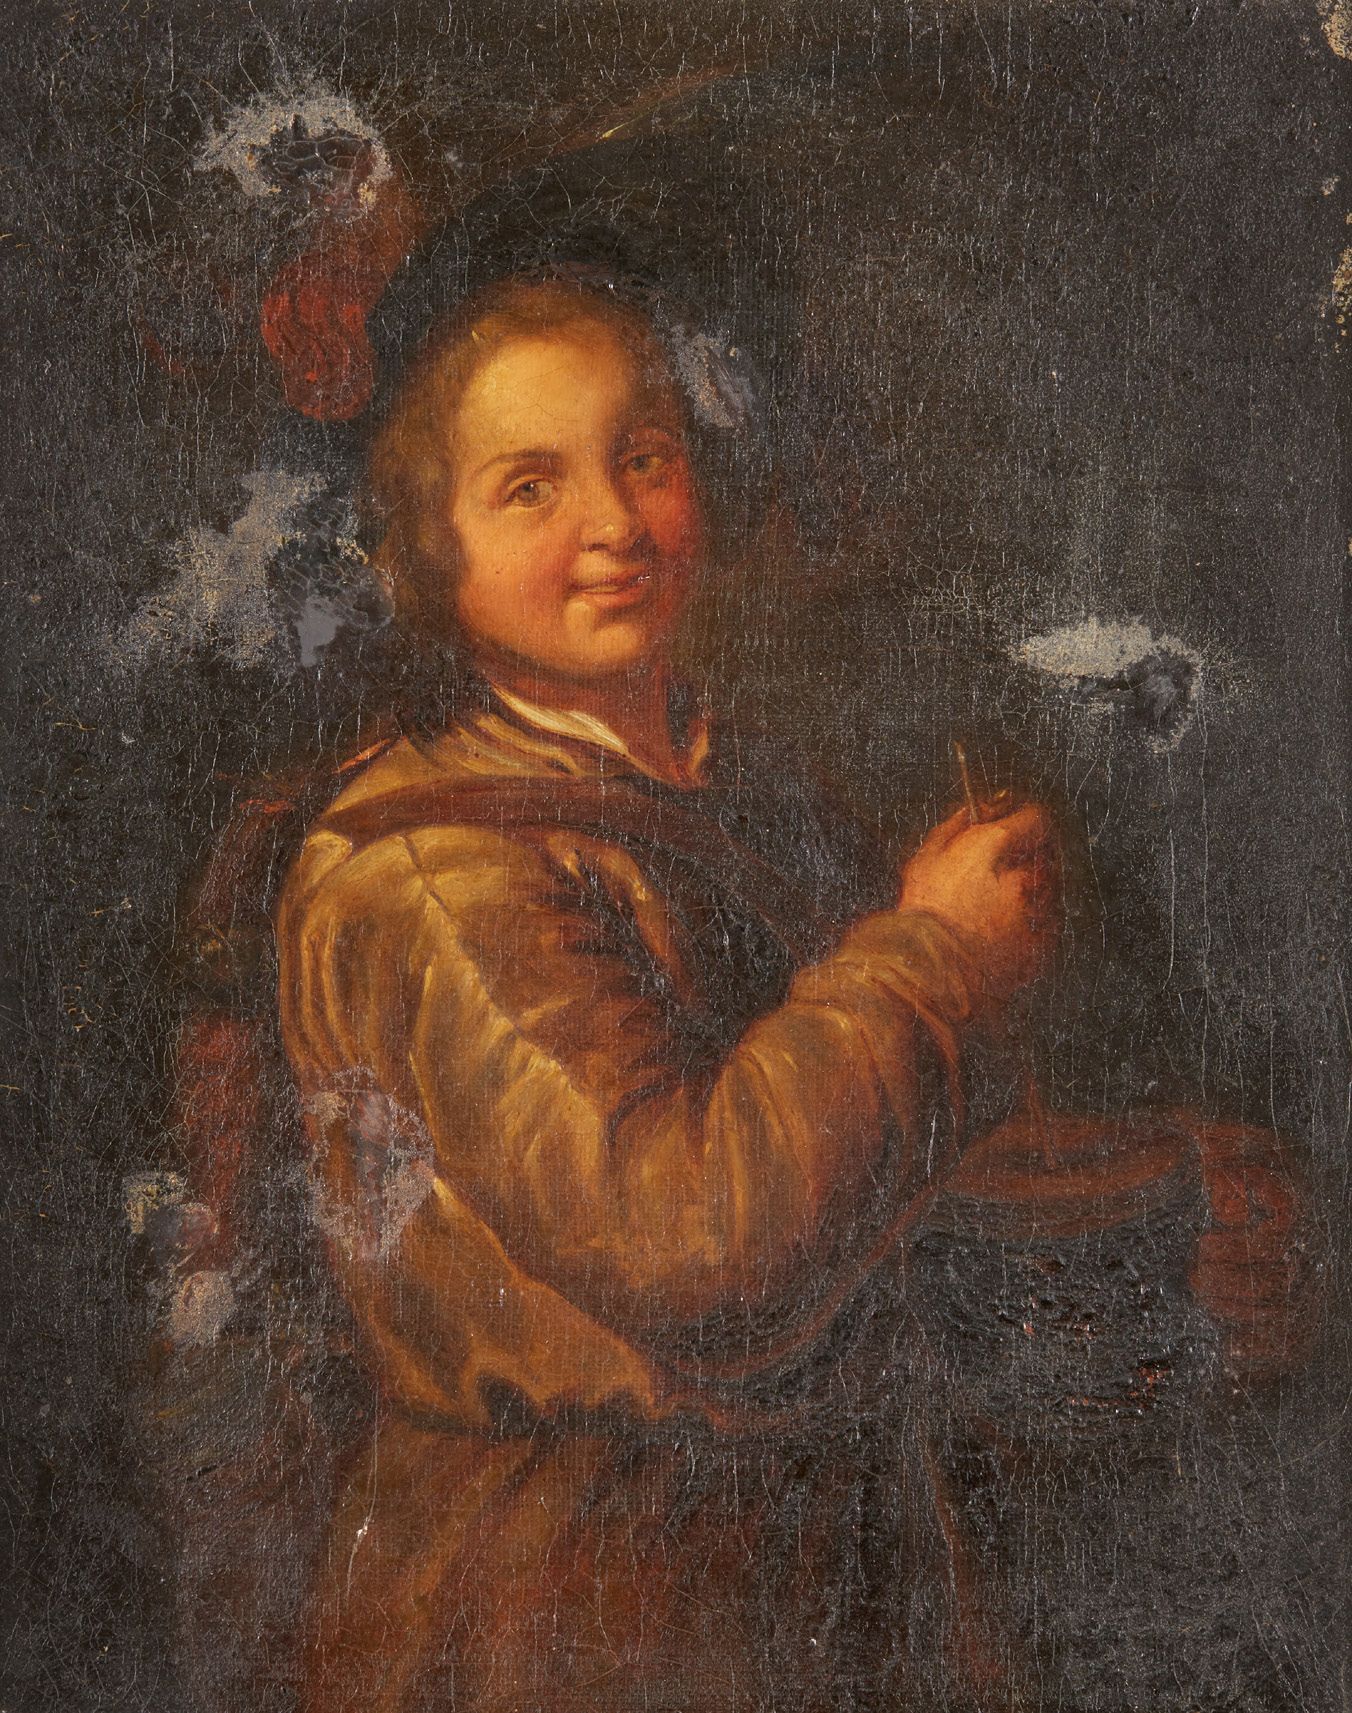 Ecole Hollandaise vers 1700 The rommelpot player
Canvas
41 x 32,5 cm